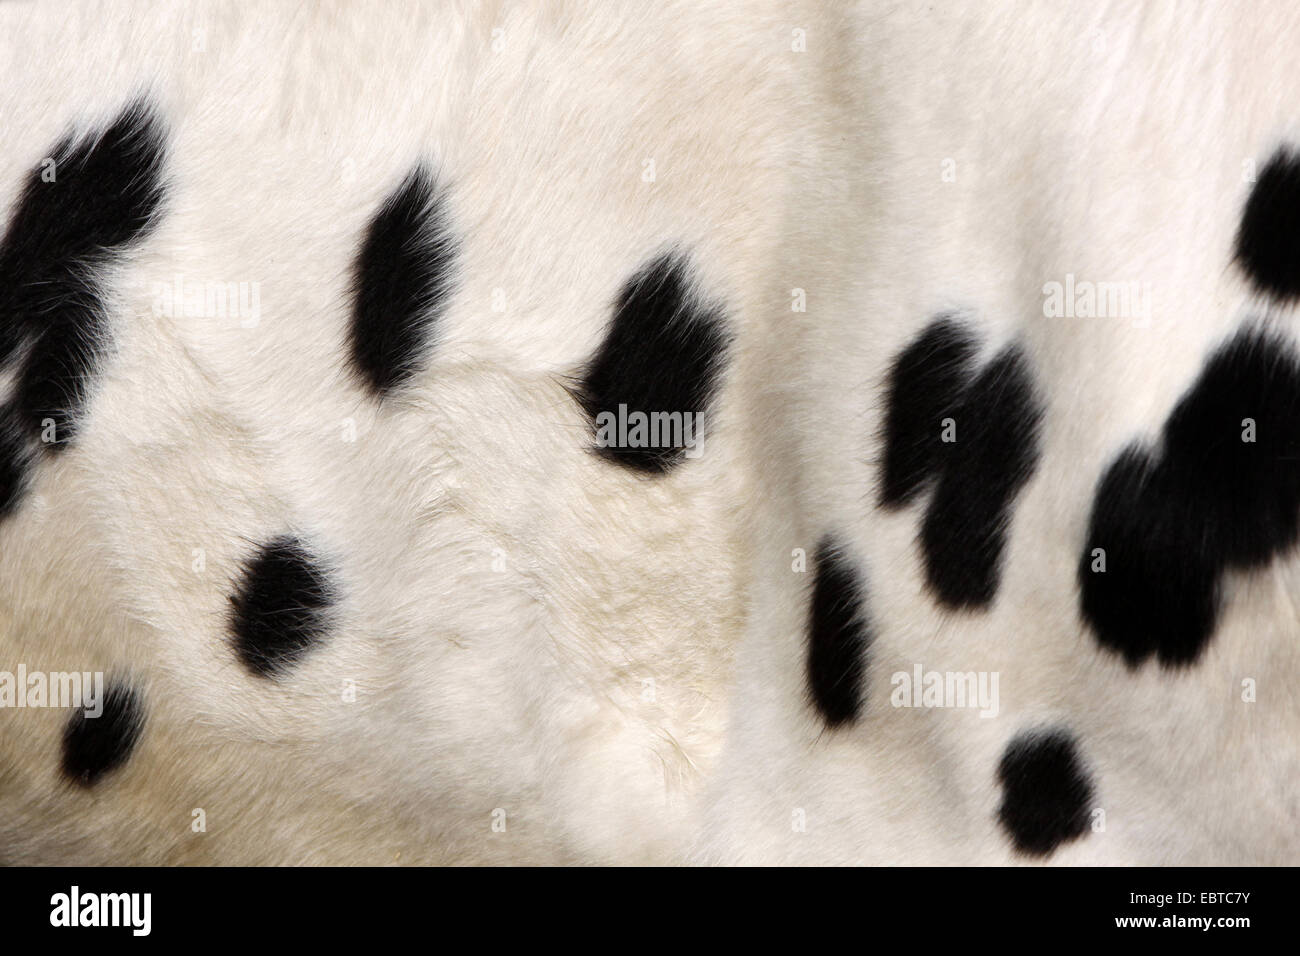 Les bovins domestiques (Bos primigenius f. taurus), la fourrure de bovins laitiers Pied Noir Banque D'Images